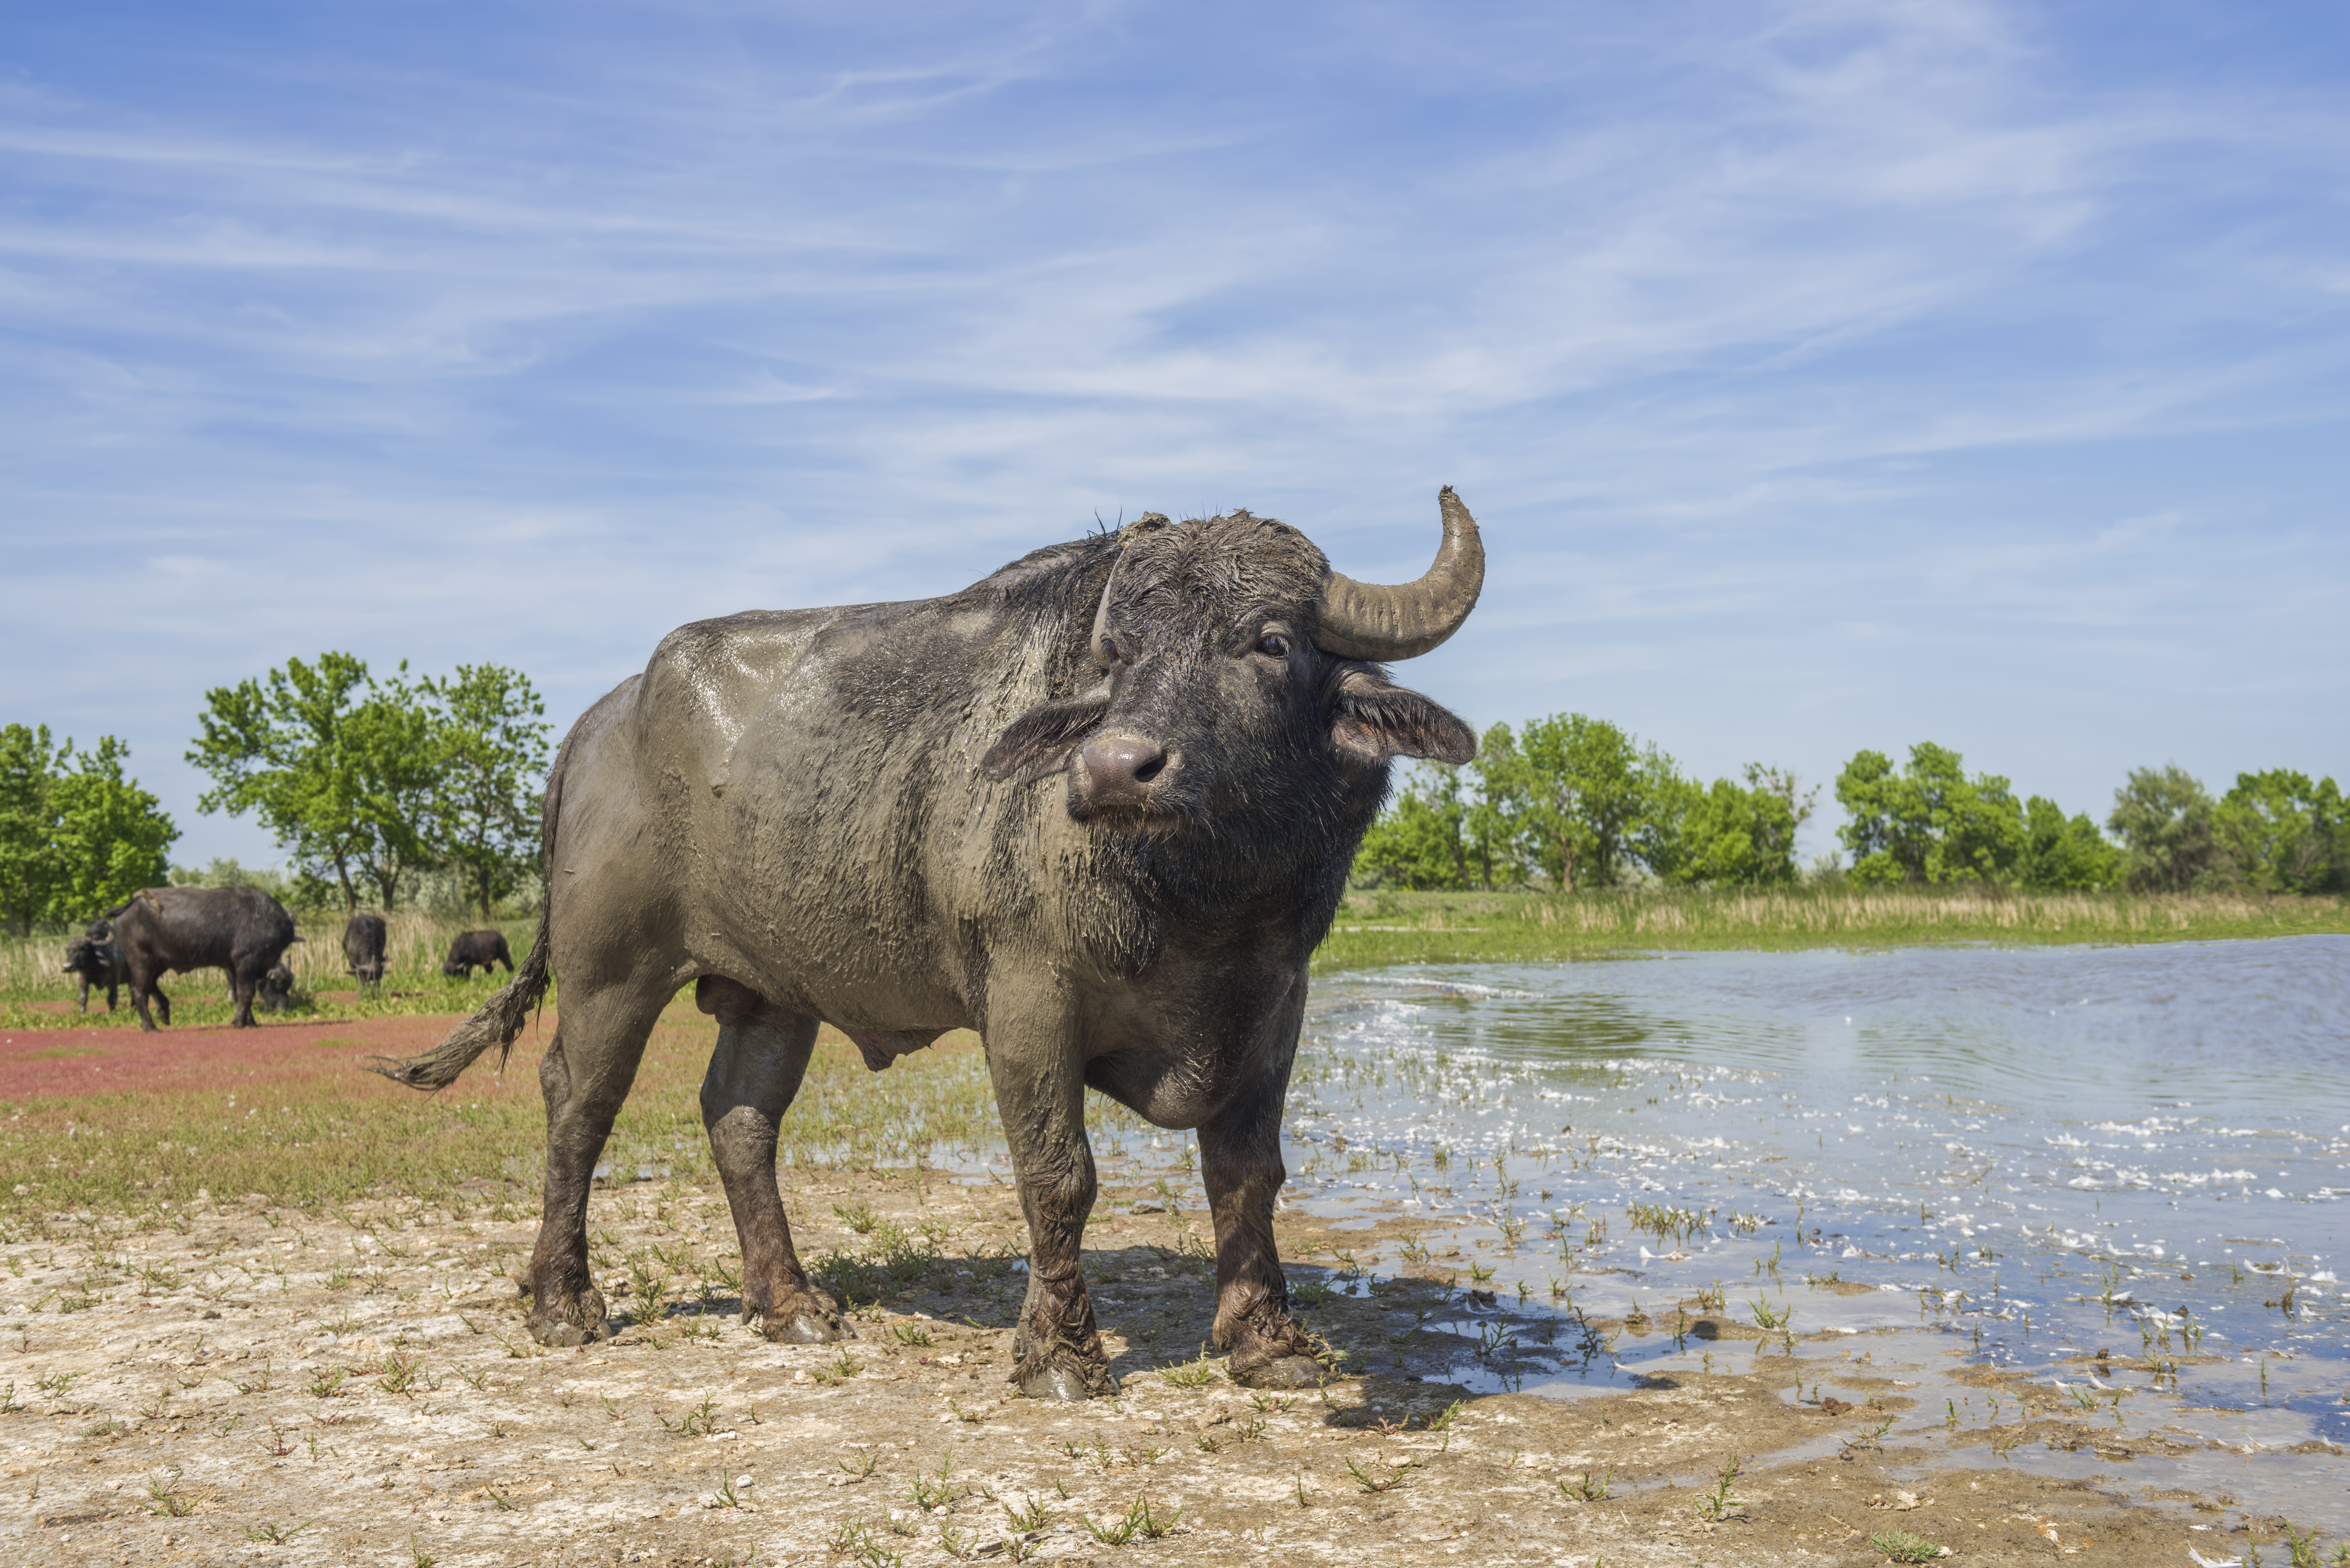 Water buffalo boosts dynamics in Danube Delta | Rewilding Europe